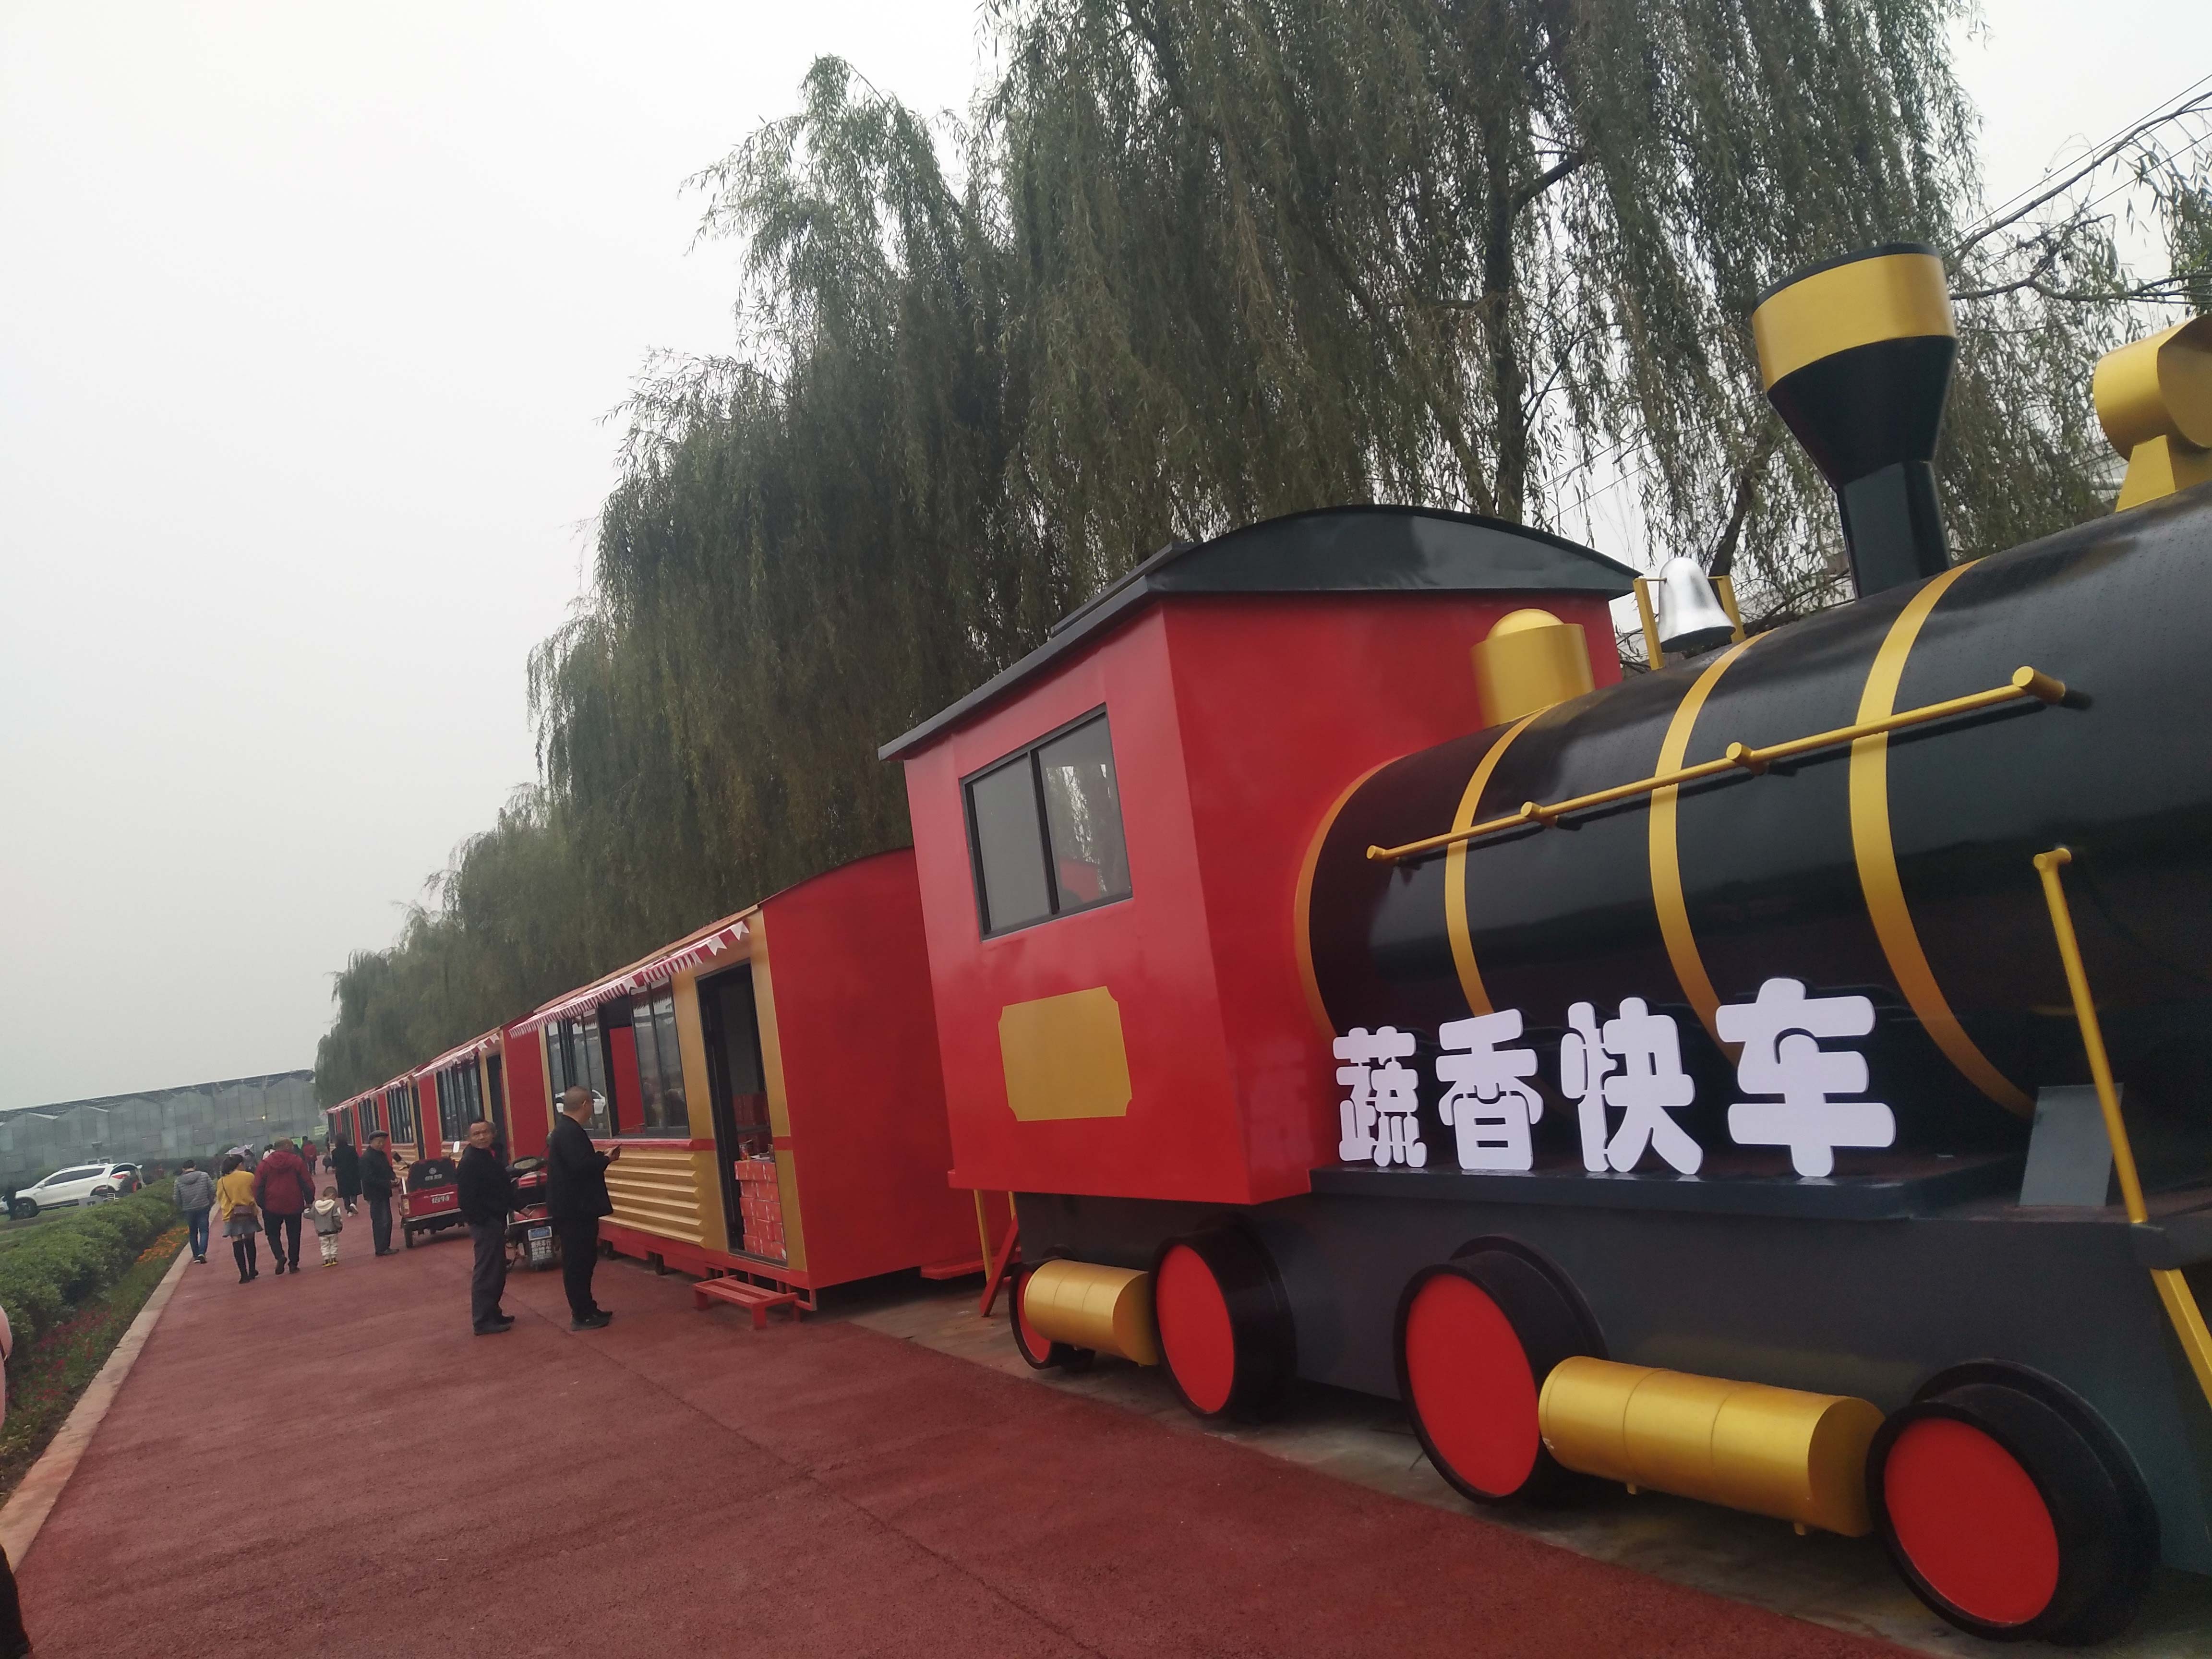 彭州蒙阳蔬菜博览园不锈钢火车雕塑